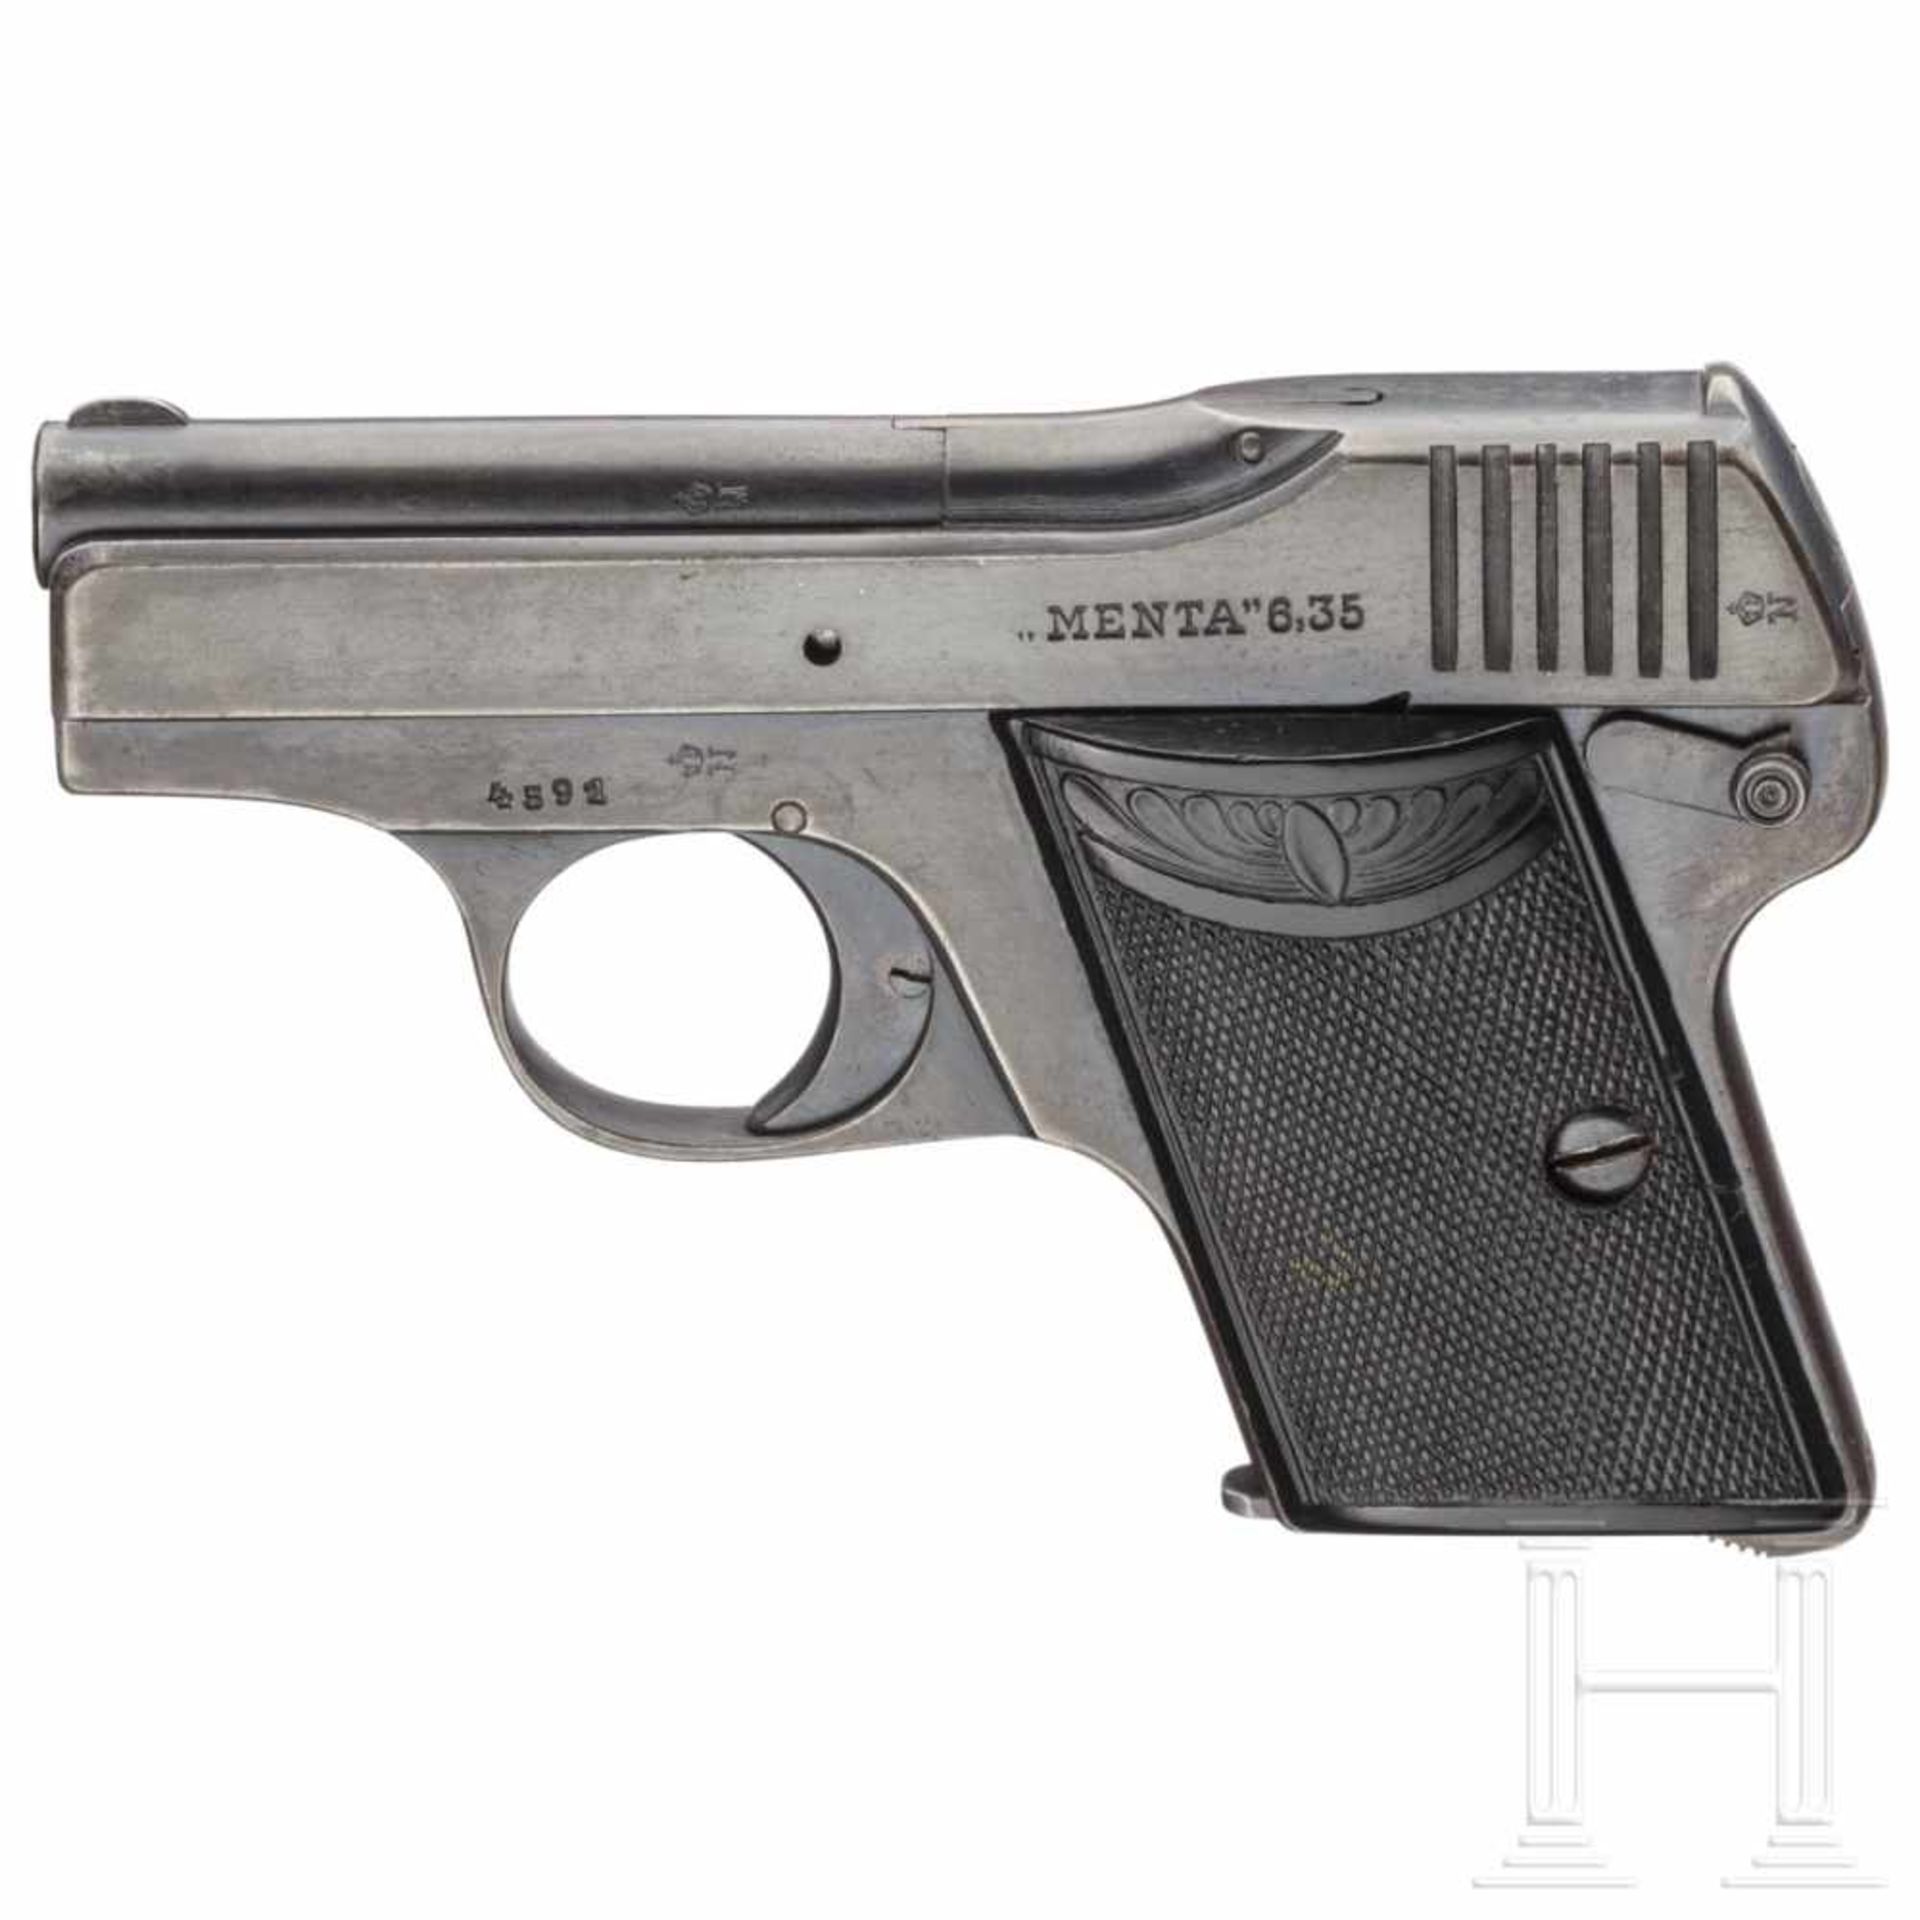 A Menta pocket pistolKal. 6,35 mm Brown., Nr. 4591, nummerngleich. Lauf matt. Sechsschüssig.